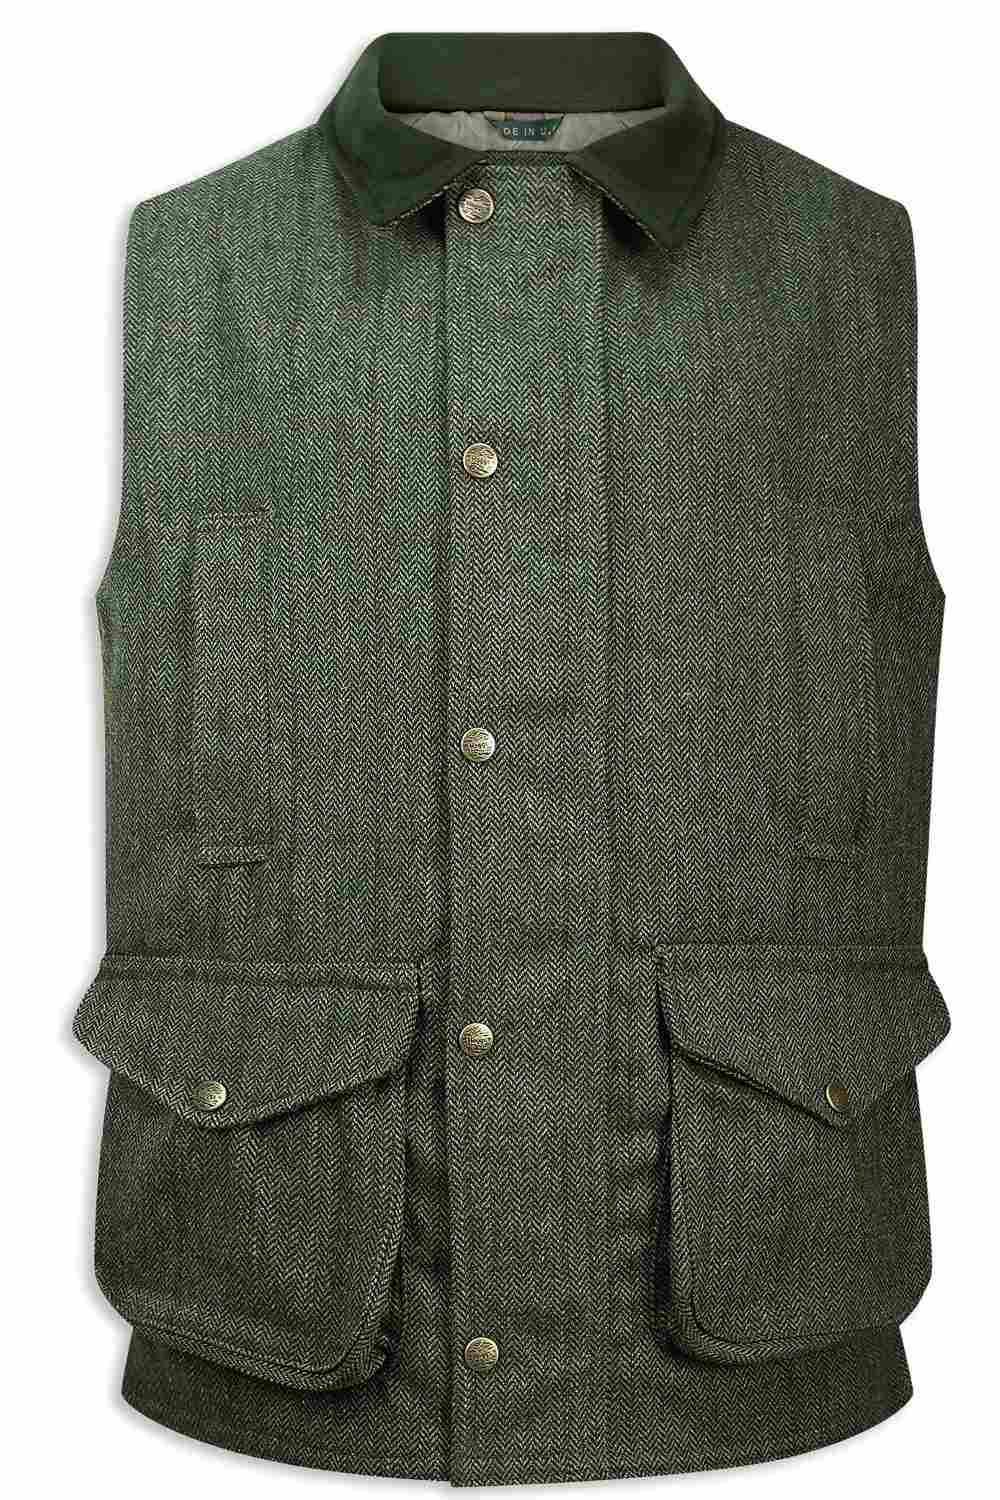 Hoggs of Fife Helmsdale Tweed Waistcoat